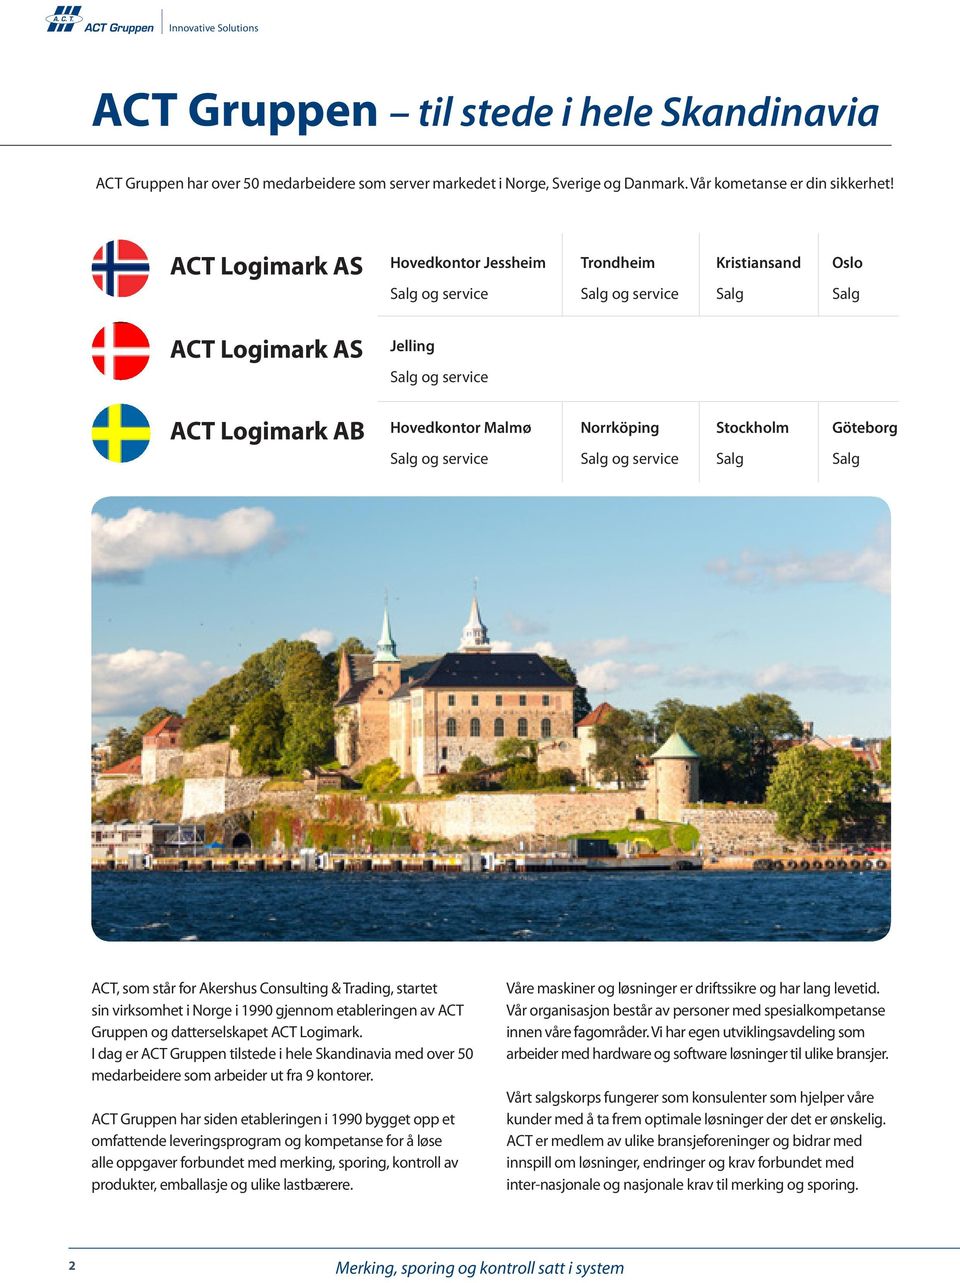 Stockholm Göteborg Salg og service Salg og service Salg Salg ACT, som står for Akershus Consulting & Trading, startet sin virksomhet i Norge i 1990 gjennom etableringen av ACT Gruppen og